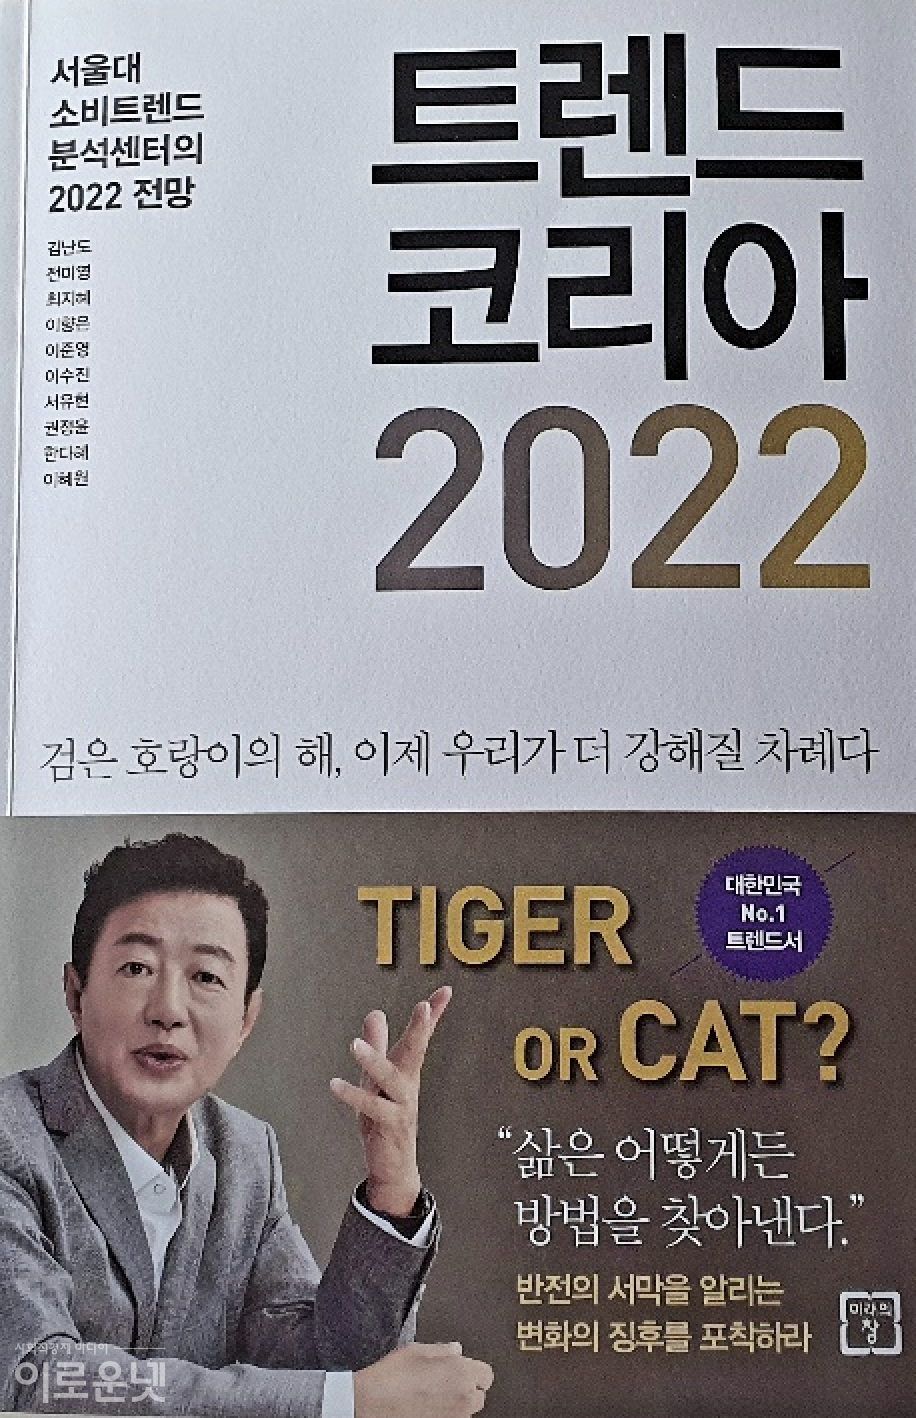 '위드 코로나'가 본격화 될 2022년 한국사회의 소비트렌드를 예측한 도서 '트랜드코리아 2022' 표지/ 사진= 백선기 에디터